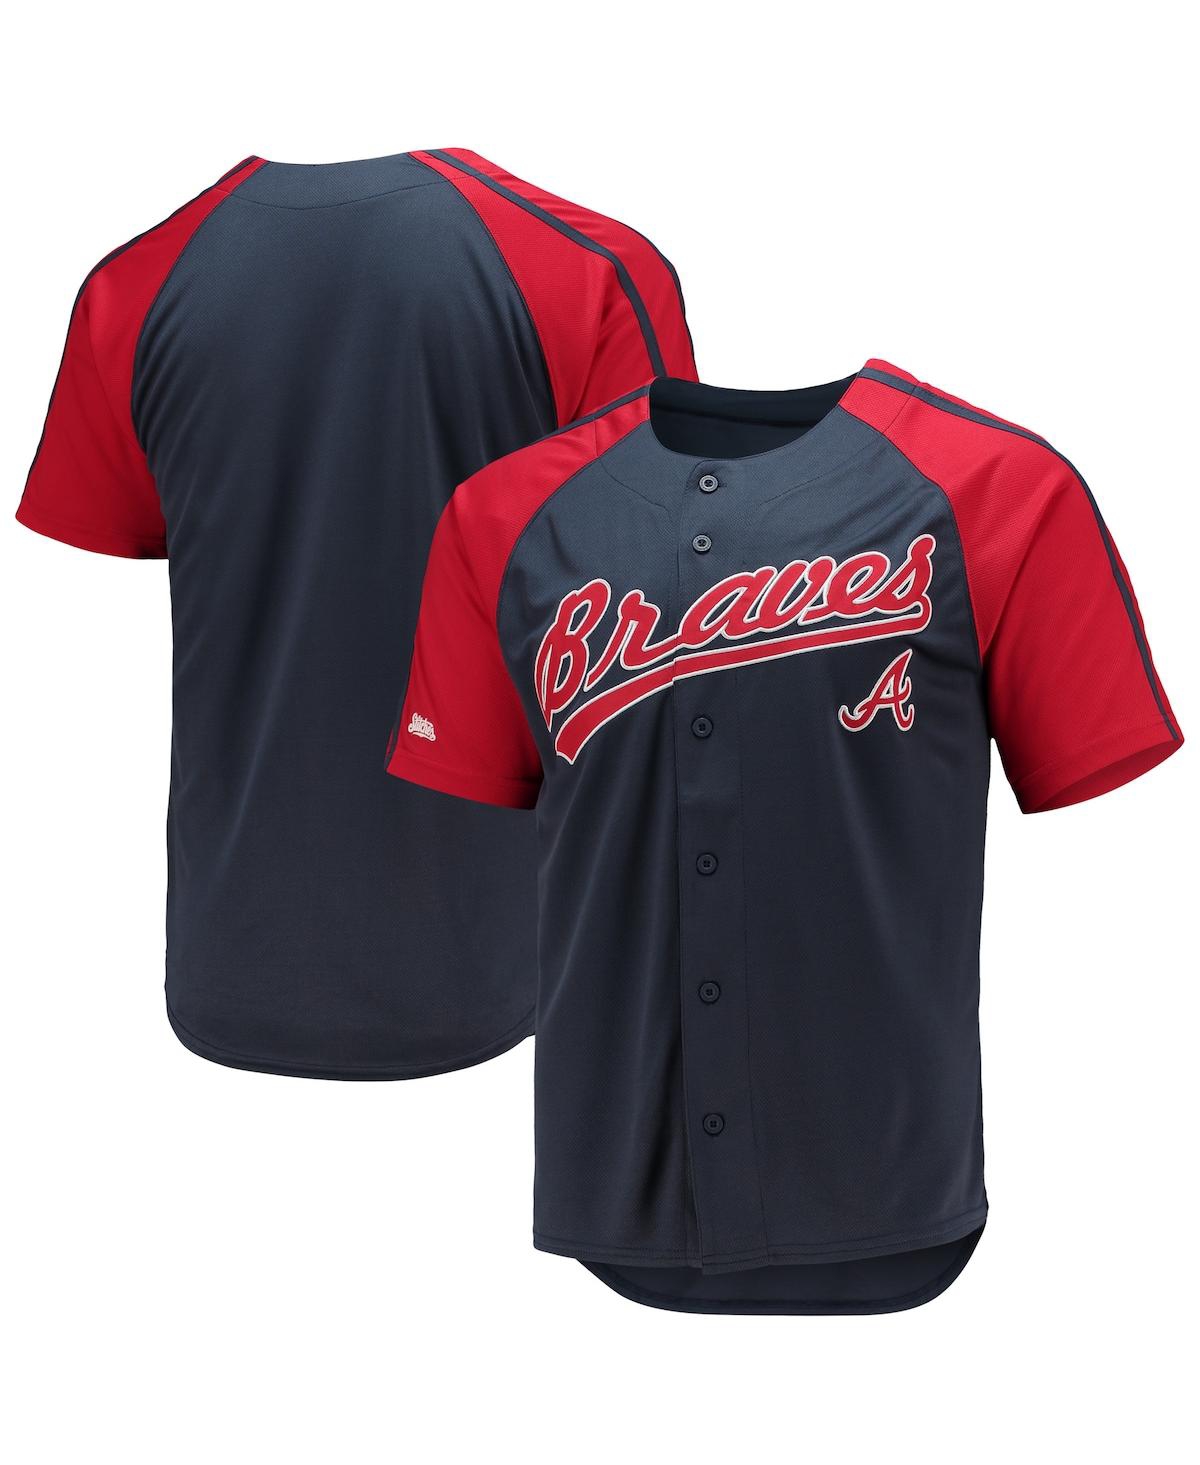 Men's Stitches Red St. Louis Cardinals Button-Down Raglan Fashion Jersey Size: Medium